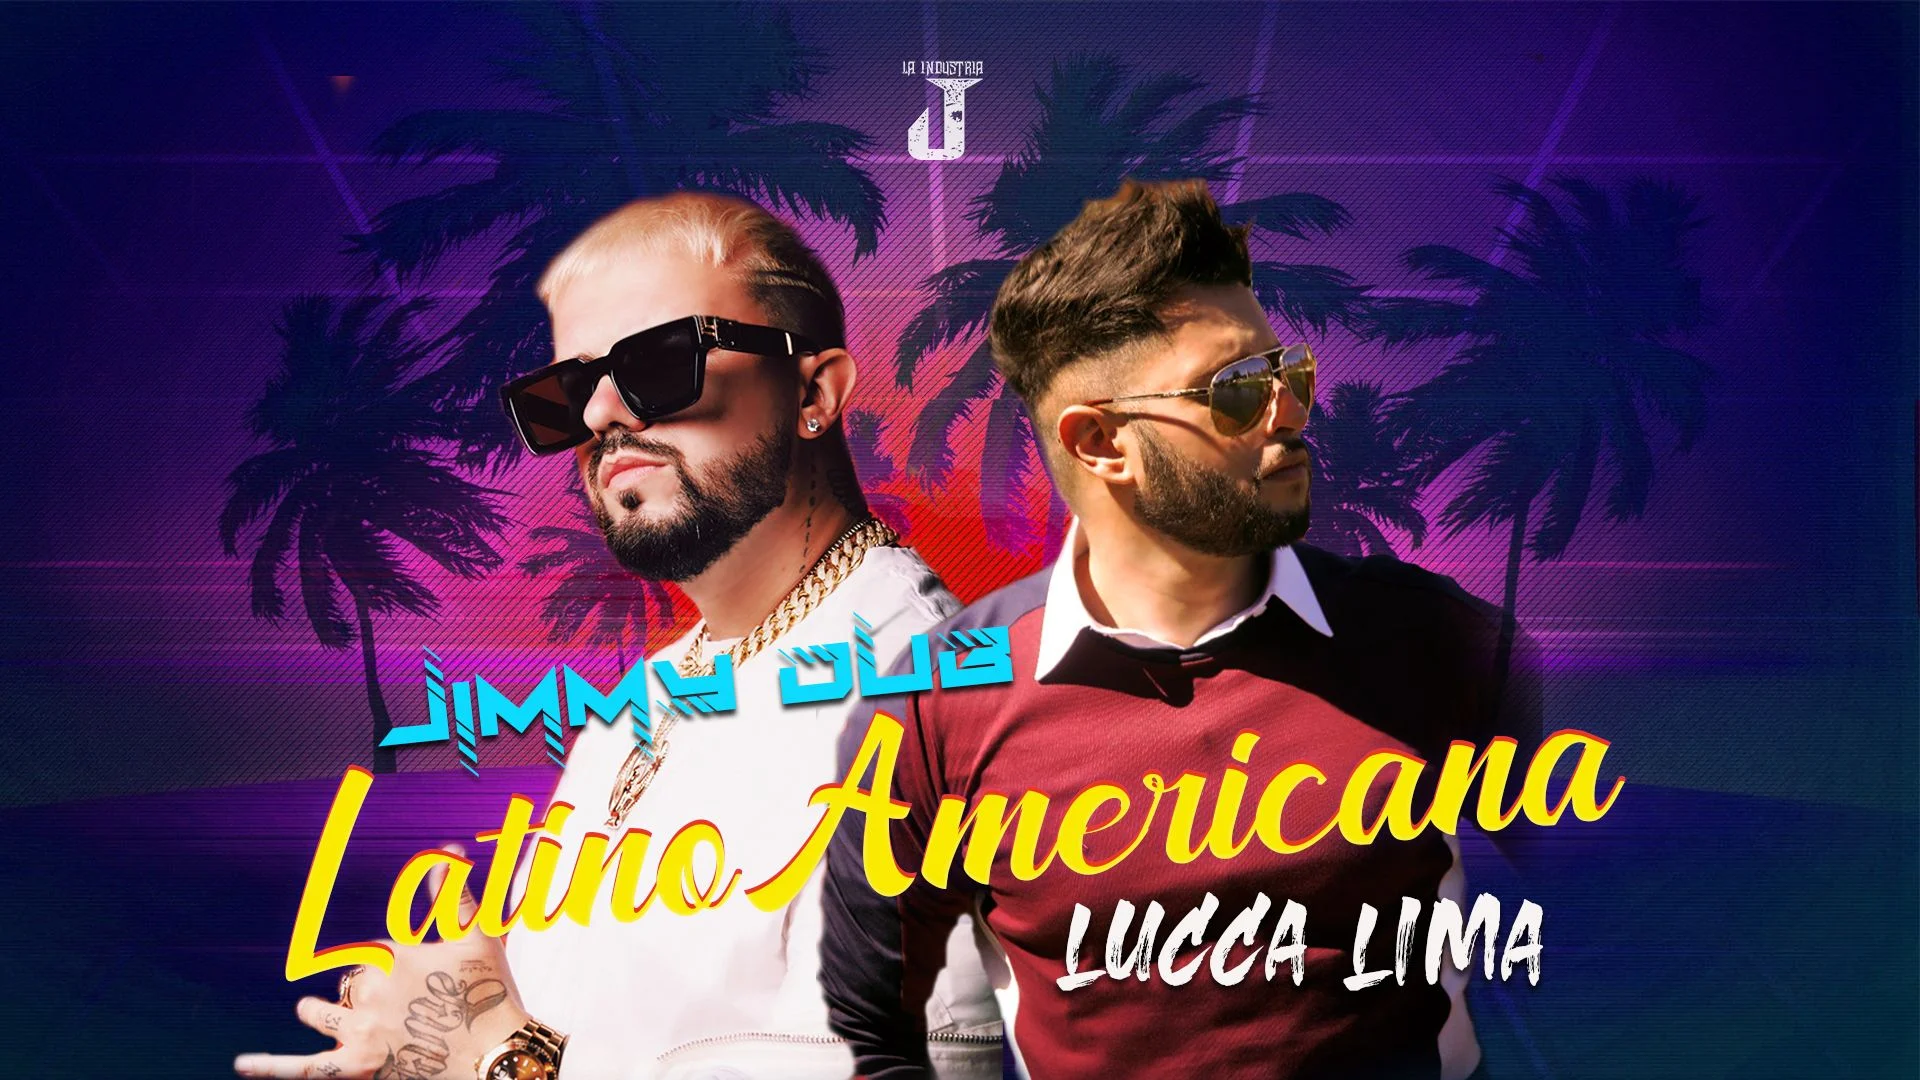 Jimmy dub latino americana feat lucca lima